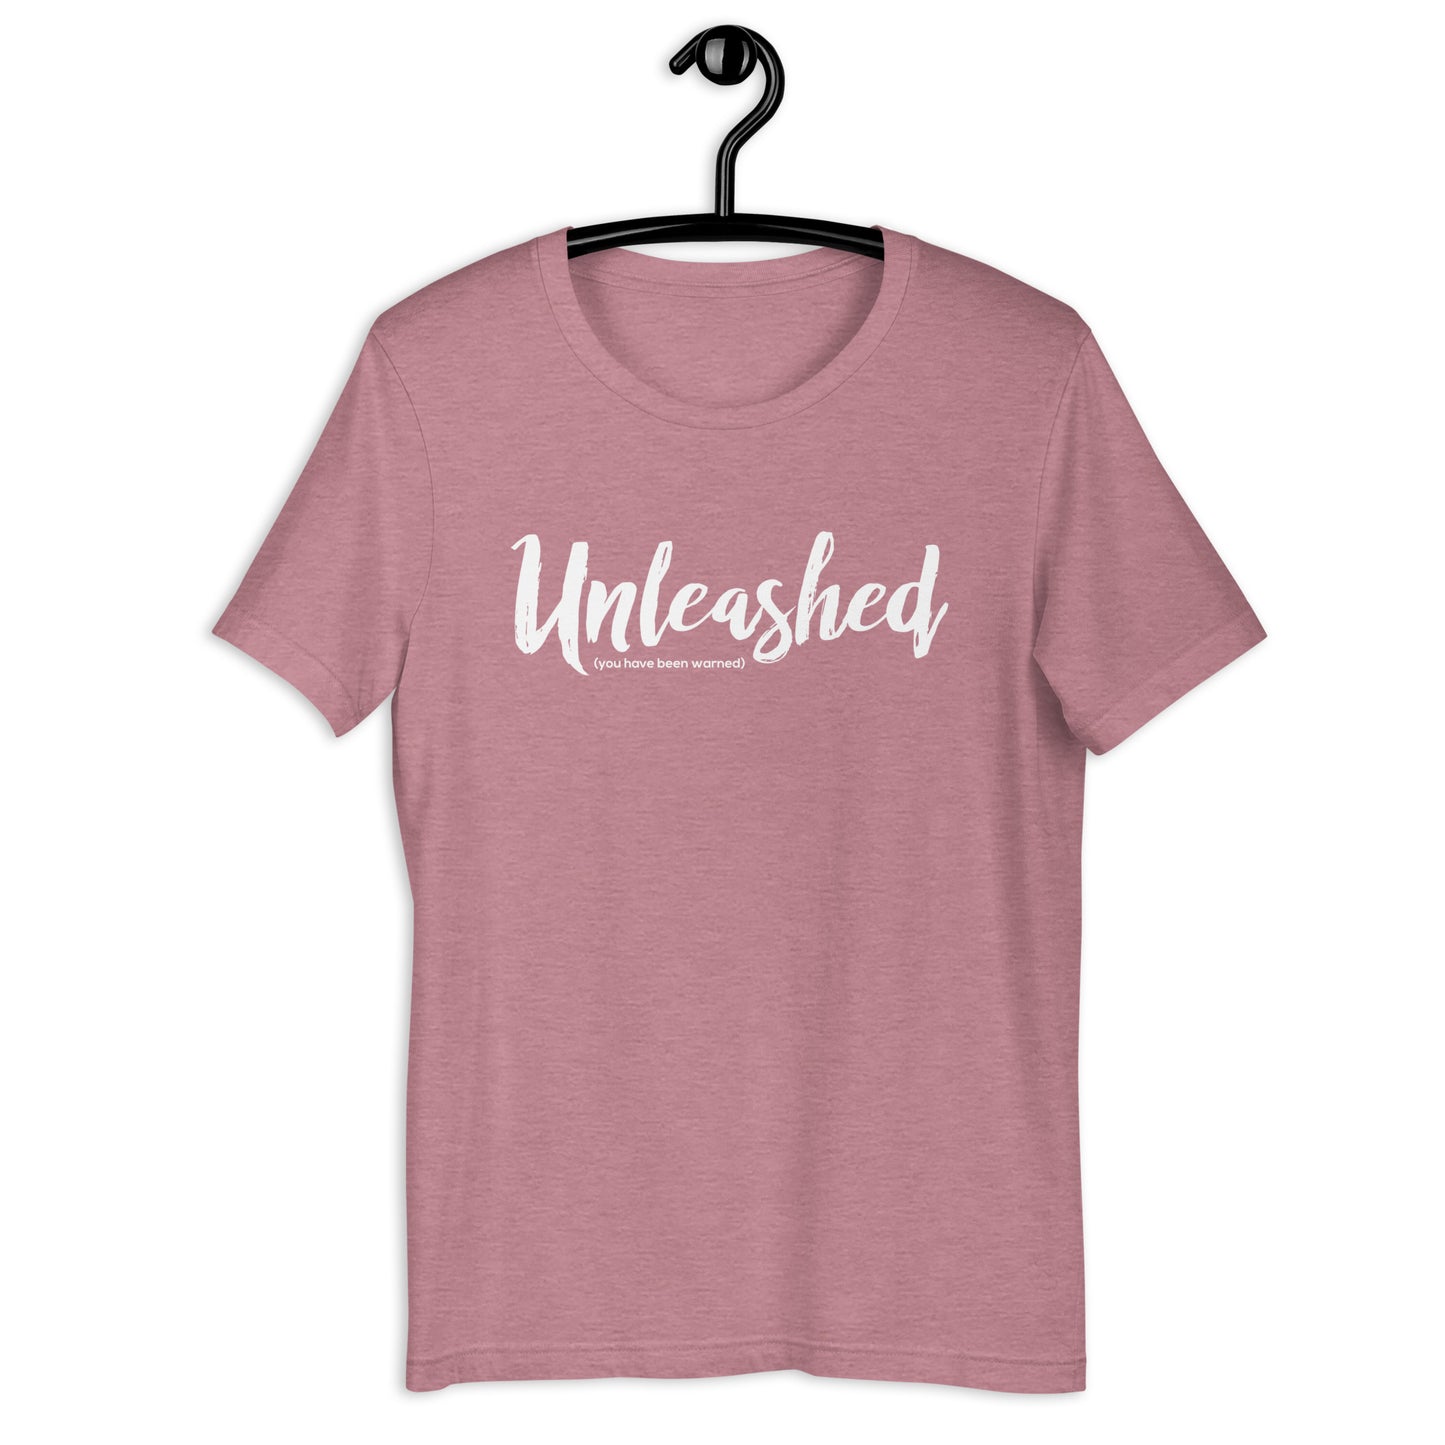 UNLEASHED - Unisex t-shirt